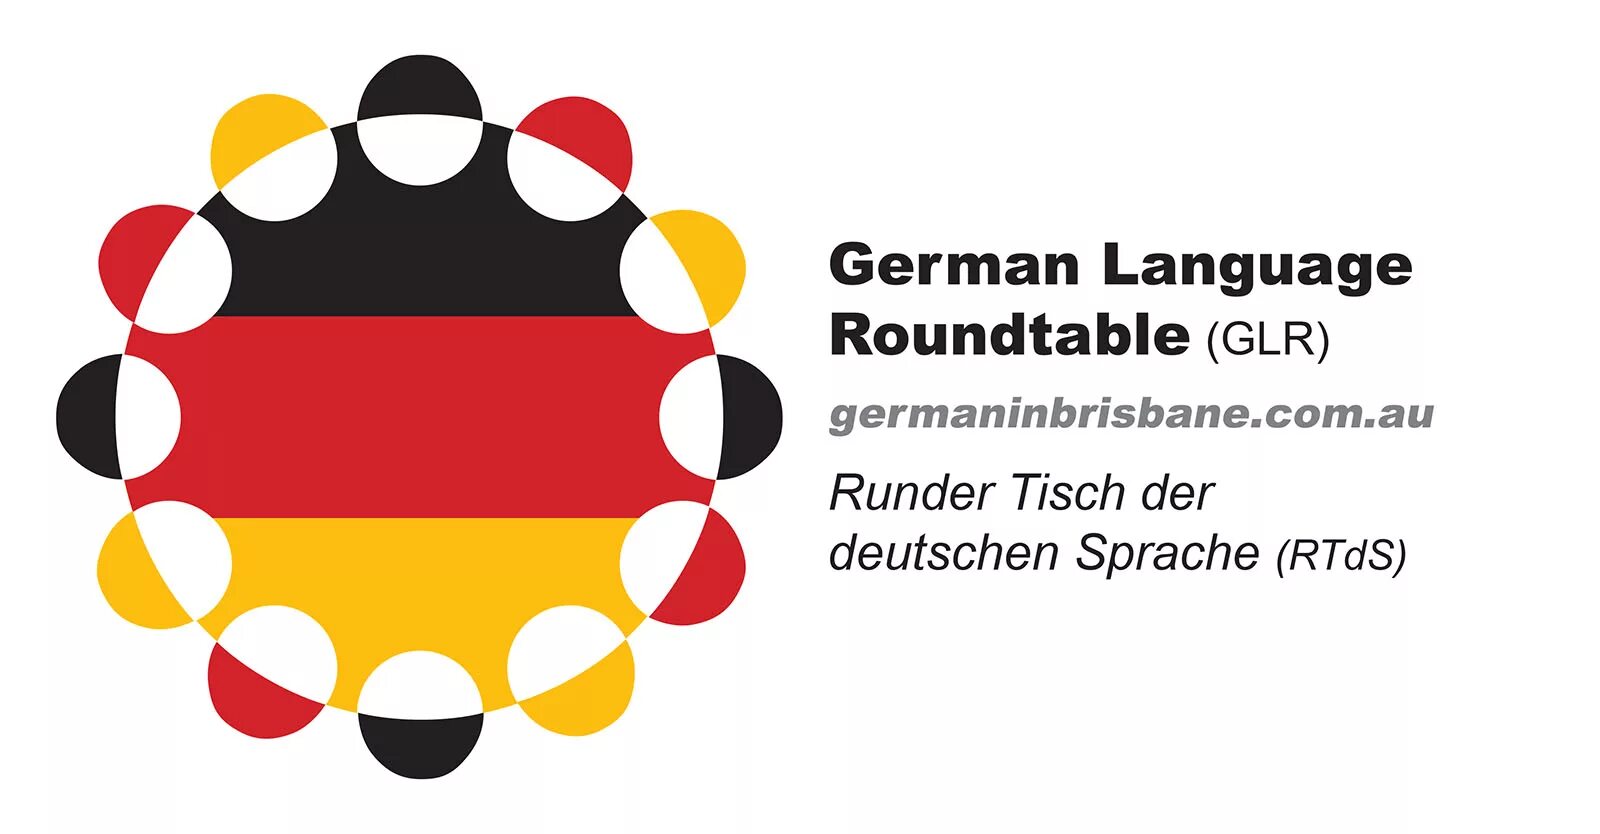 Немецкий язык. Эмблема немецкого языка. Современный немецкий язык. Эмблема Германии. He speaks german